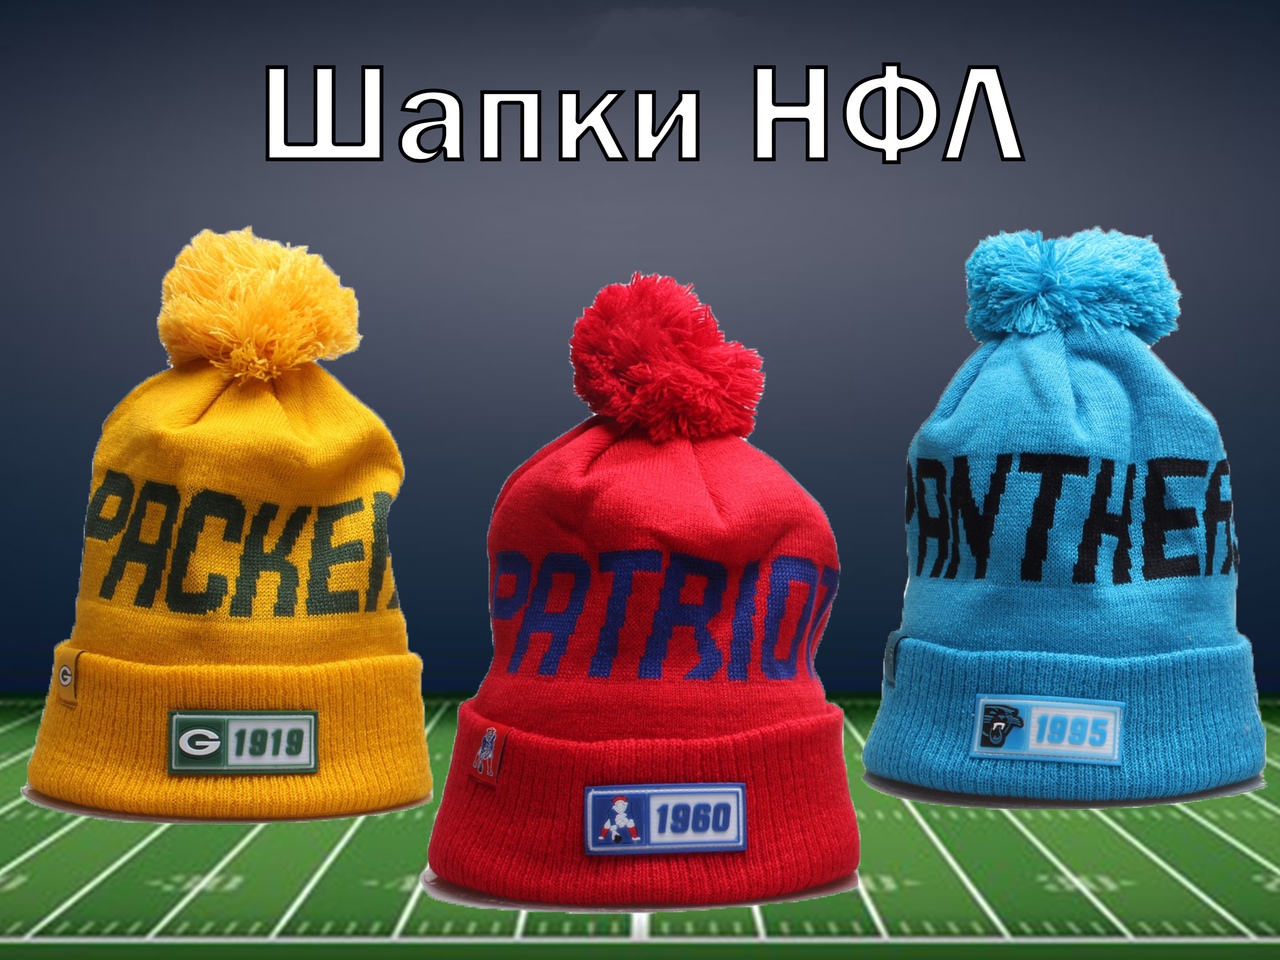 Зимние шапки NFL из США по выгодный цене.